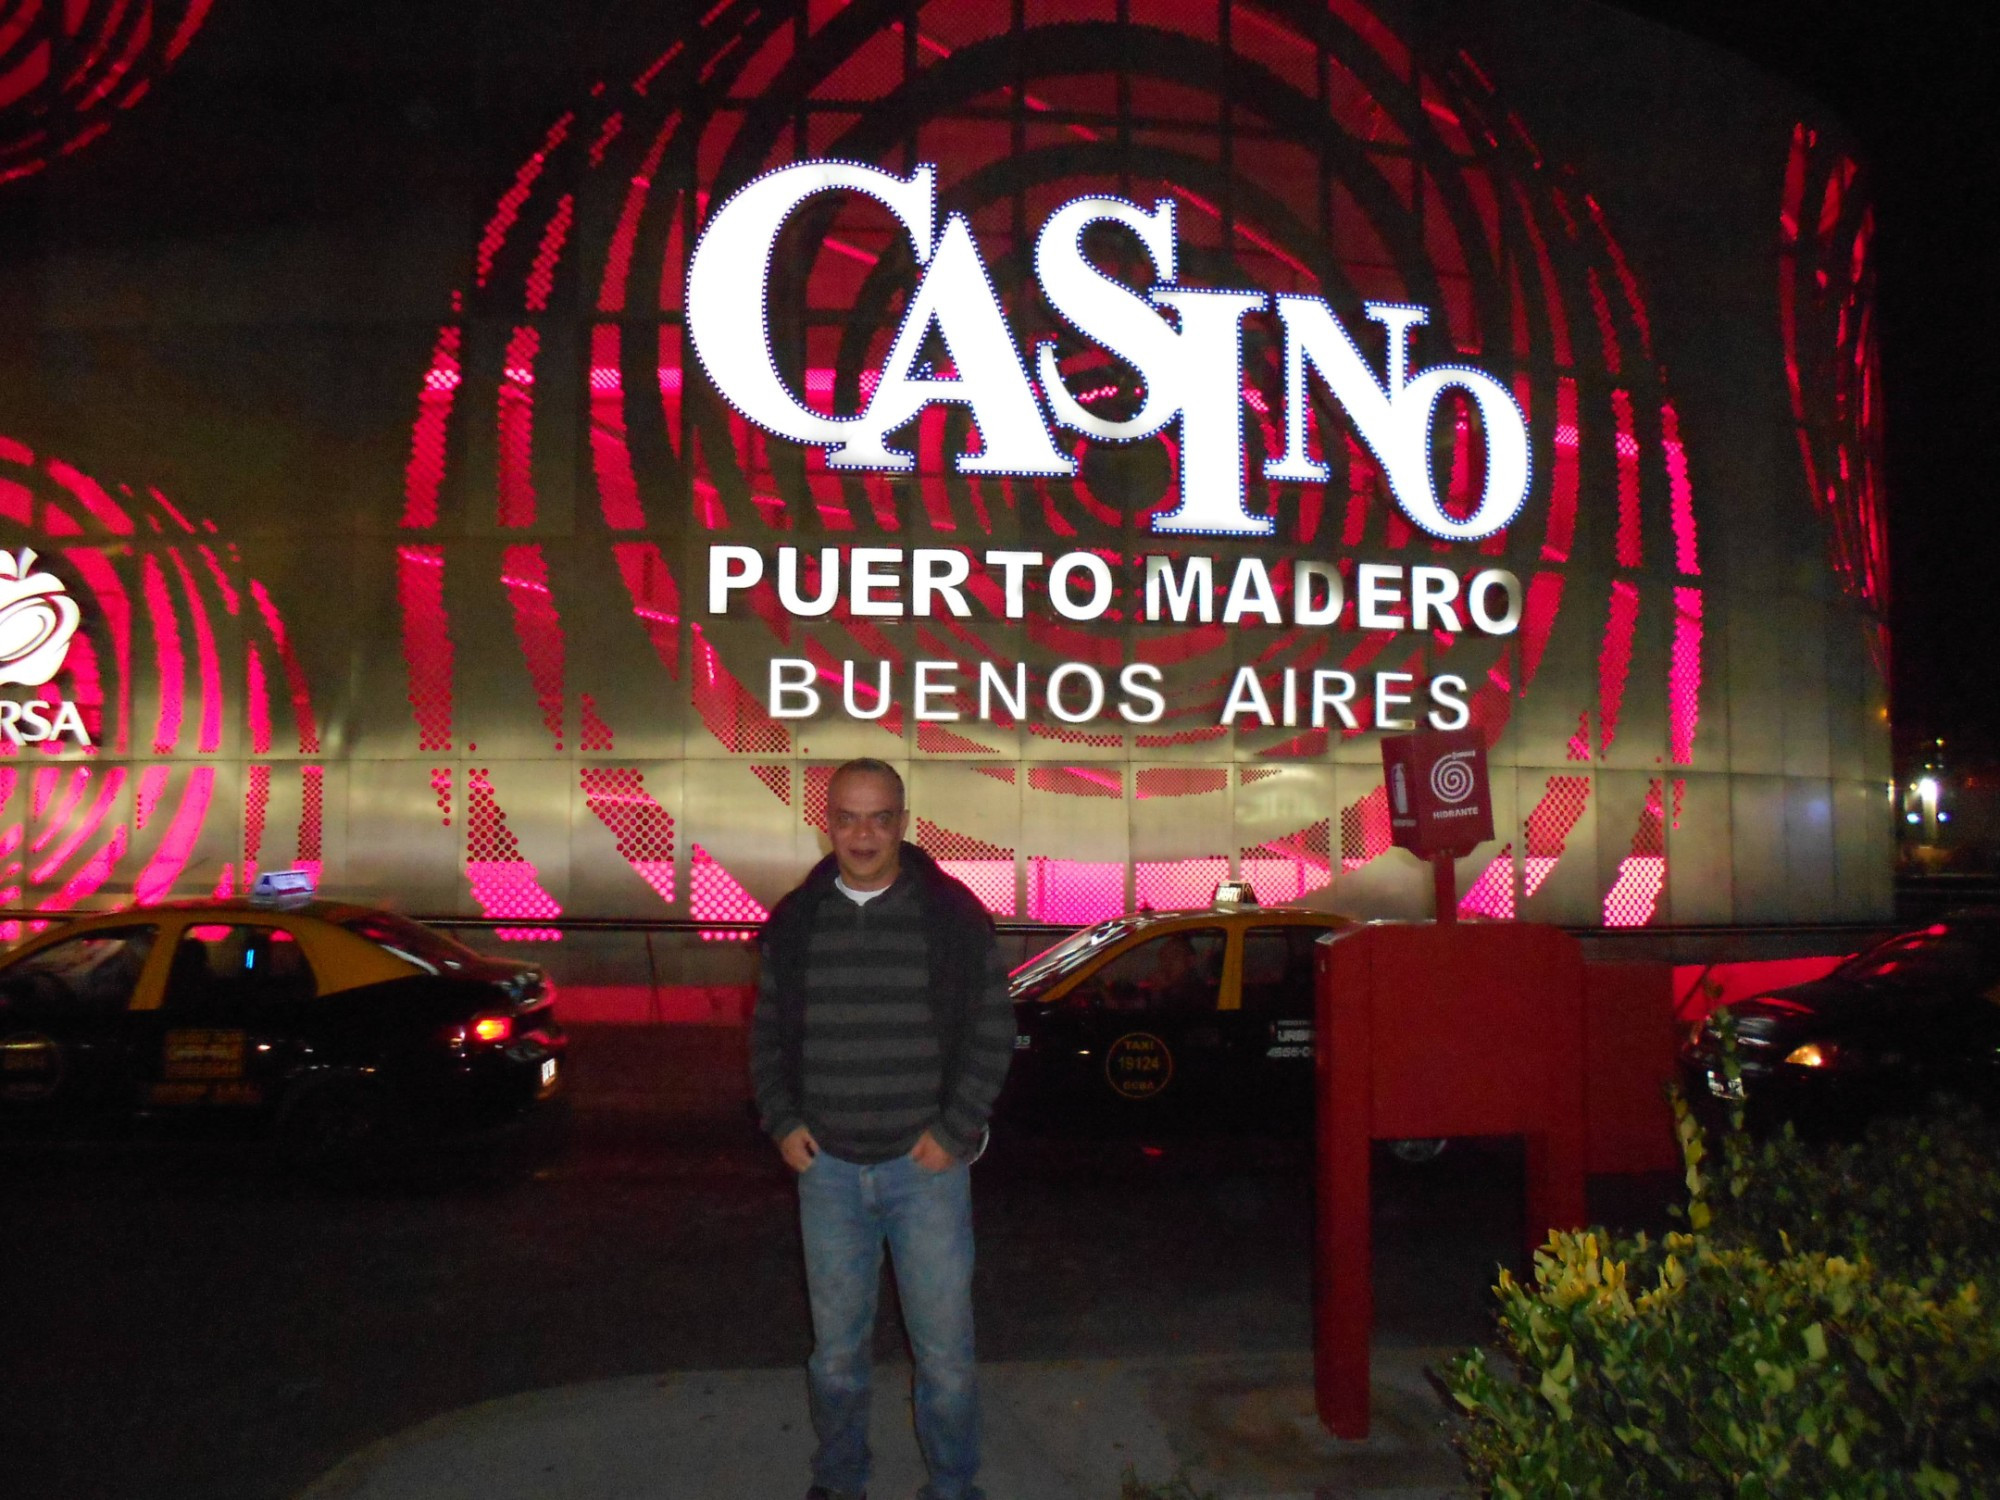 Casino Puerto Madero 